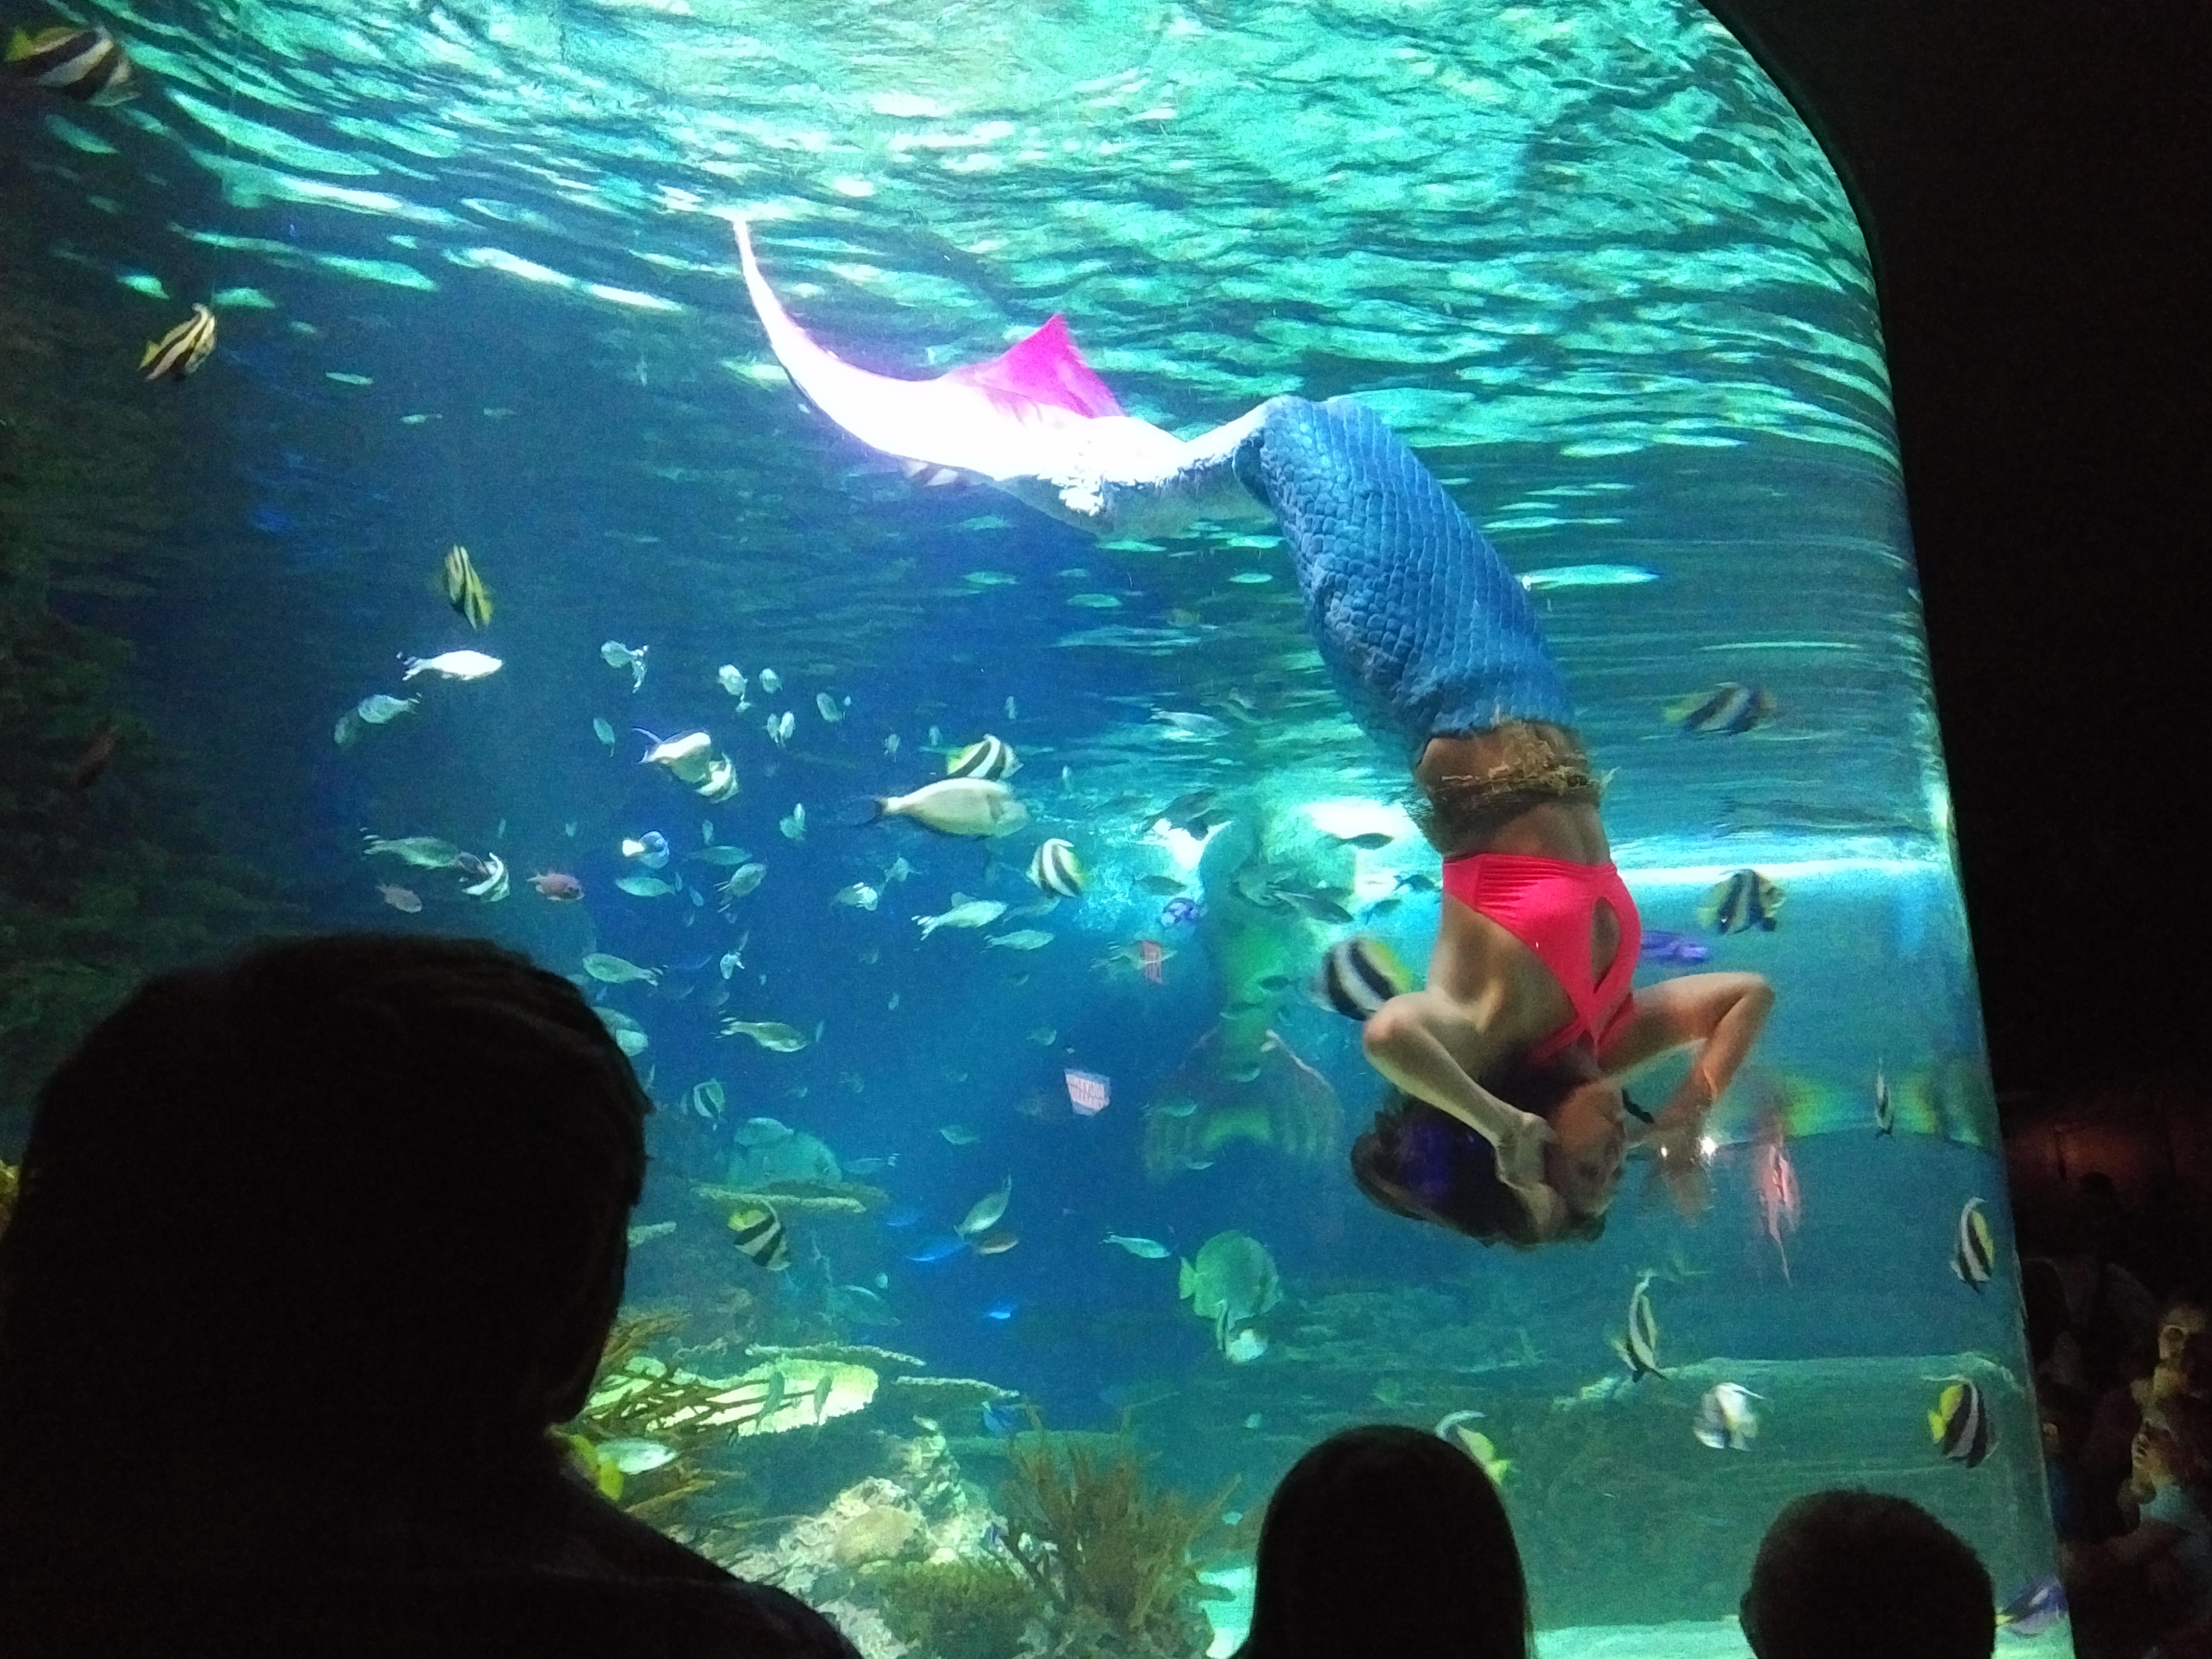 2018 TN Gatlinburg Ripleys Aquarium mermaid show mid spin.jpg